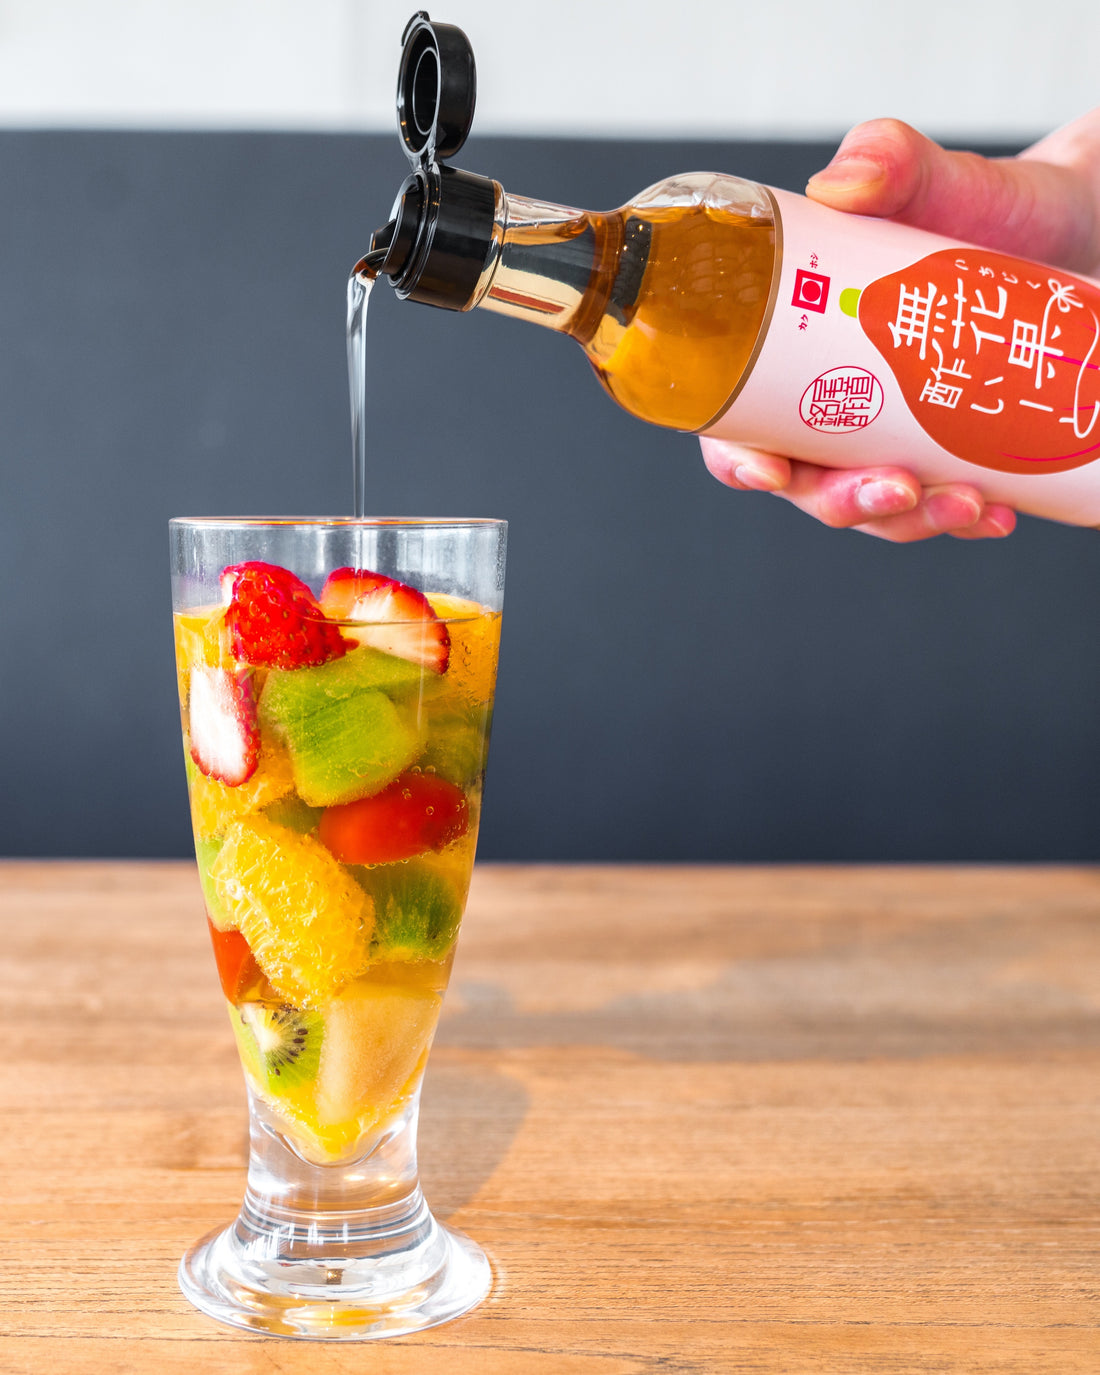 尾道造酢フルーツポンチビネガードリンク（飲む酢）の画像で果物が入ったグラスにいちじく酢いーとを注いでいる画像です。